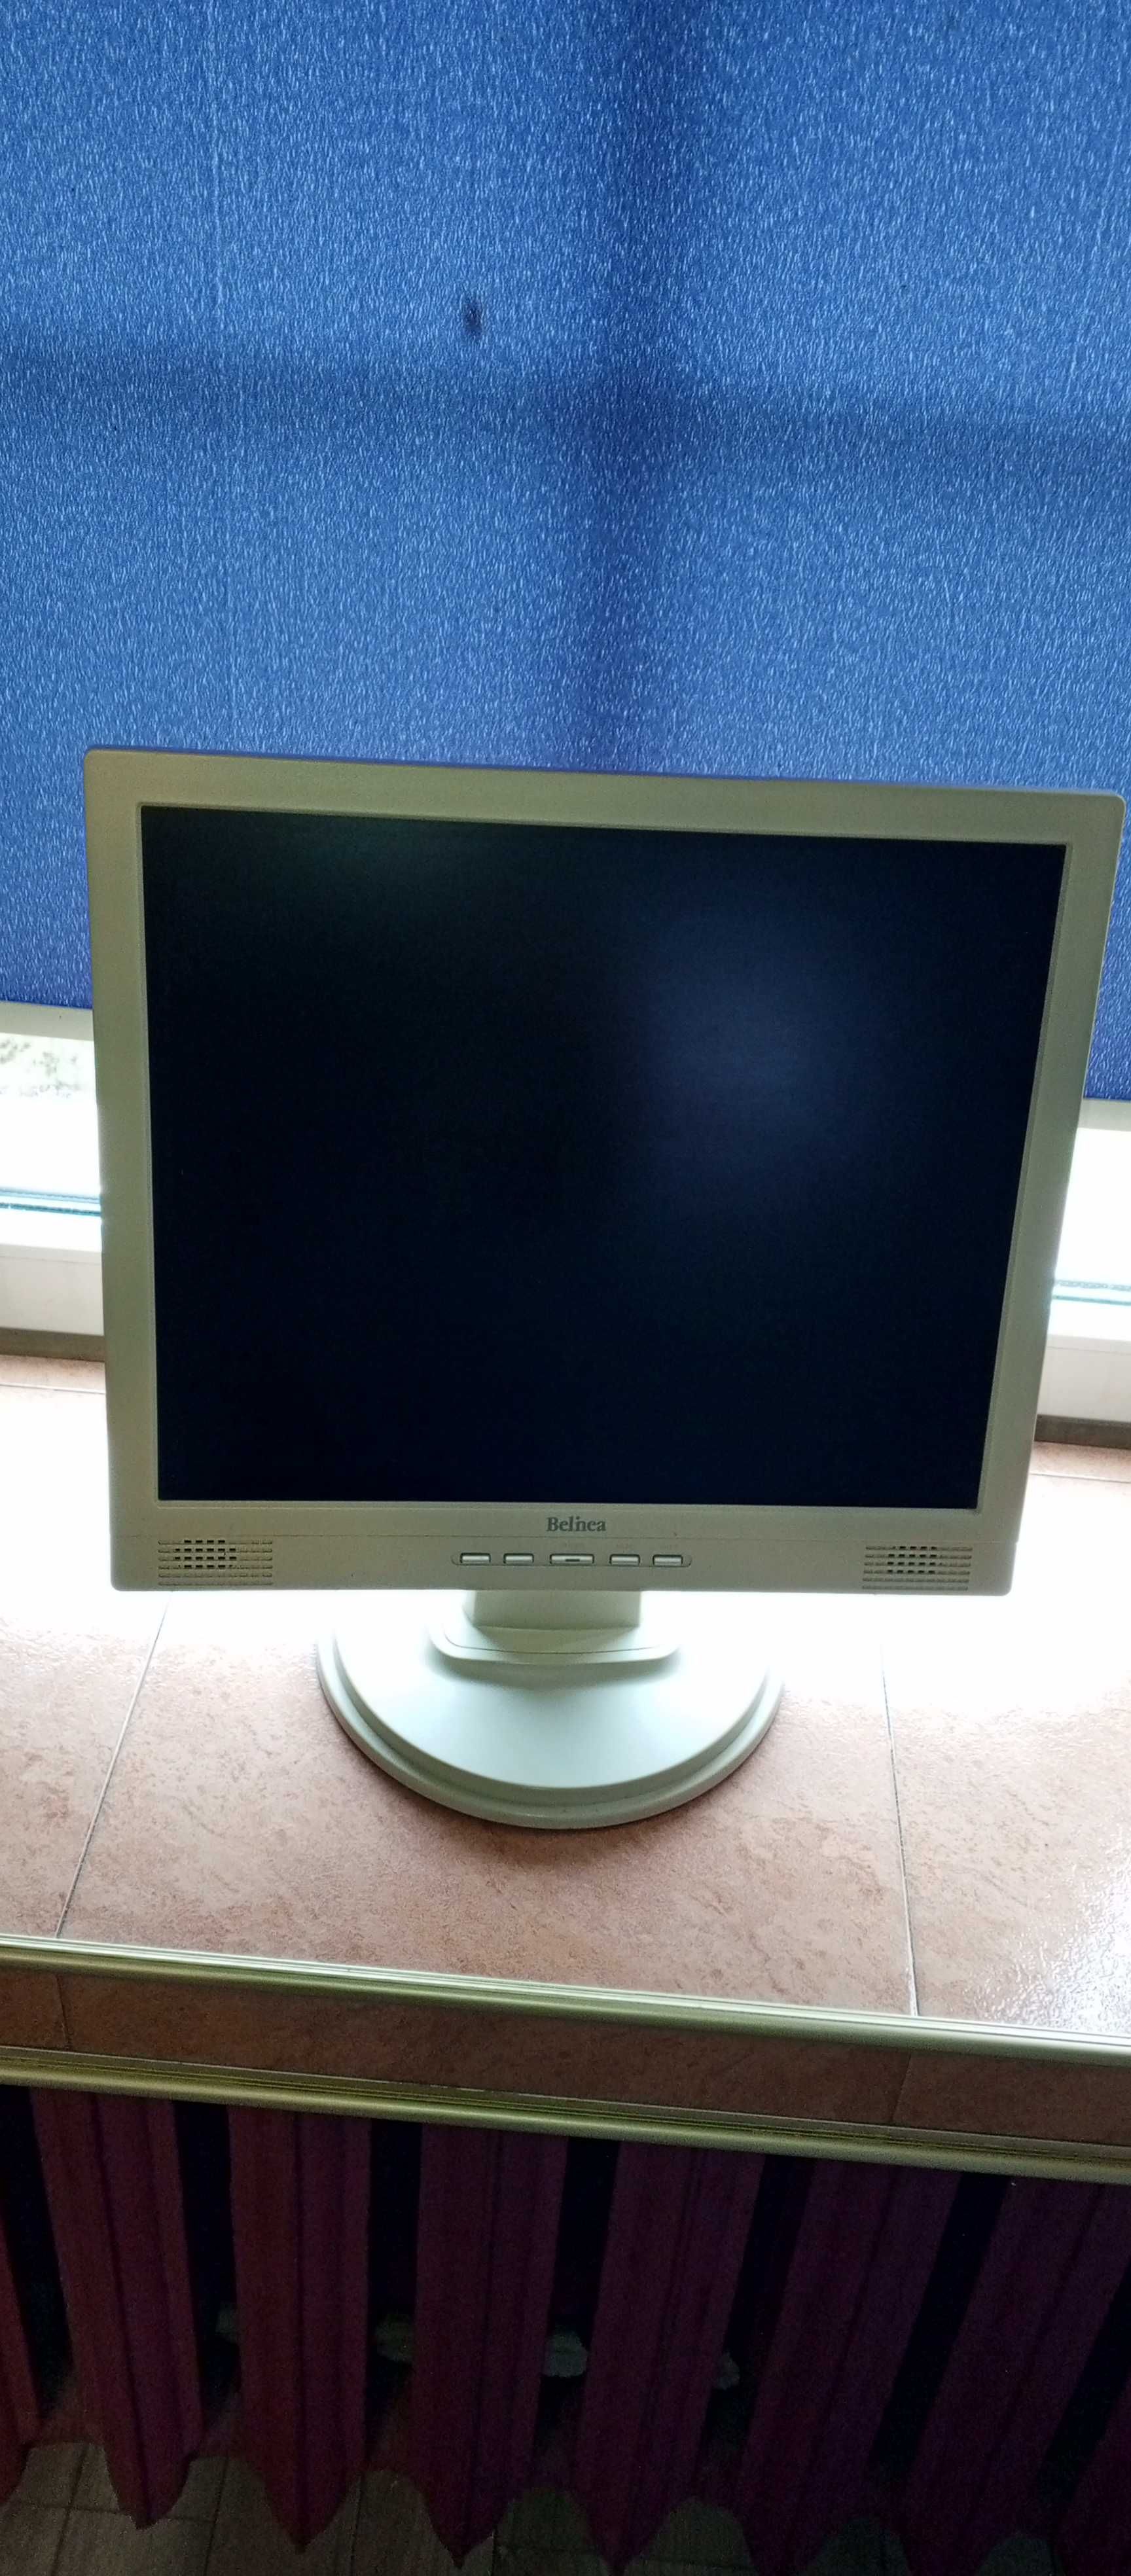 Monitor LCD Belinea model 10 19 15 (11 19 21)